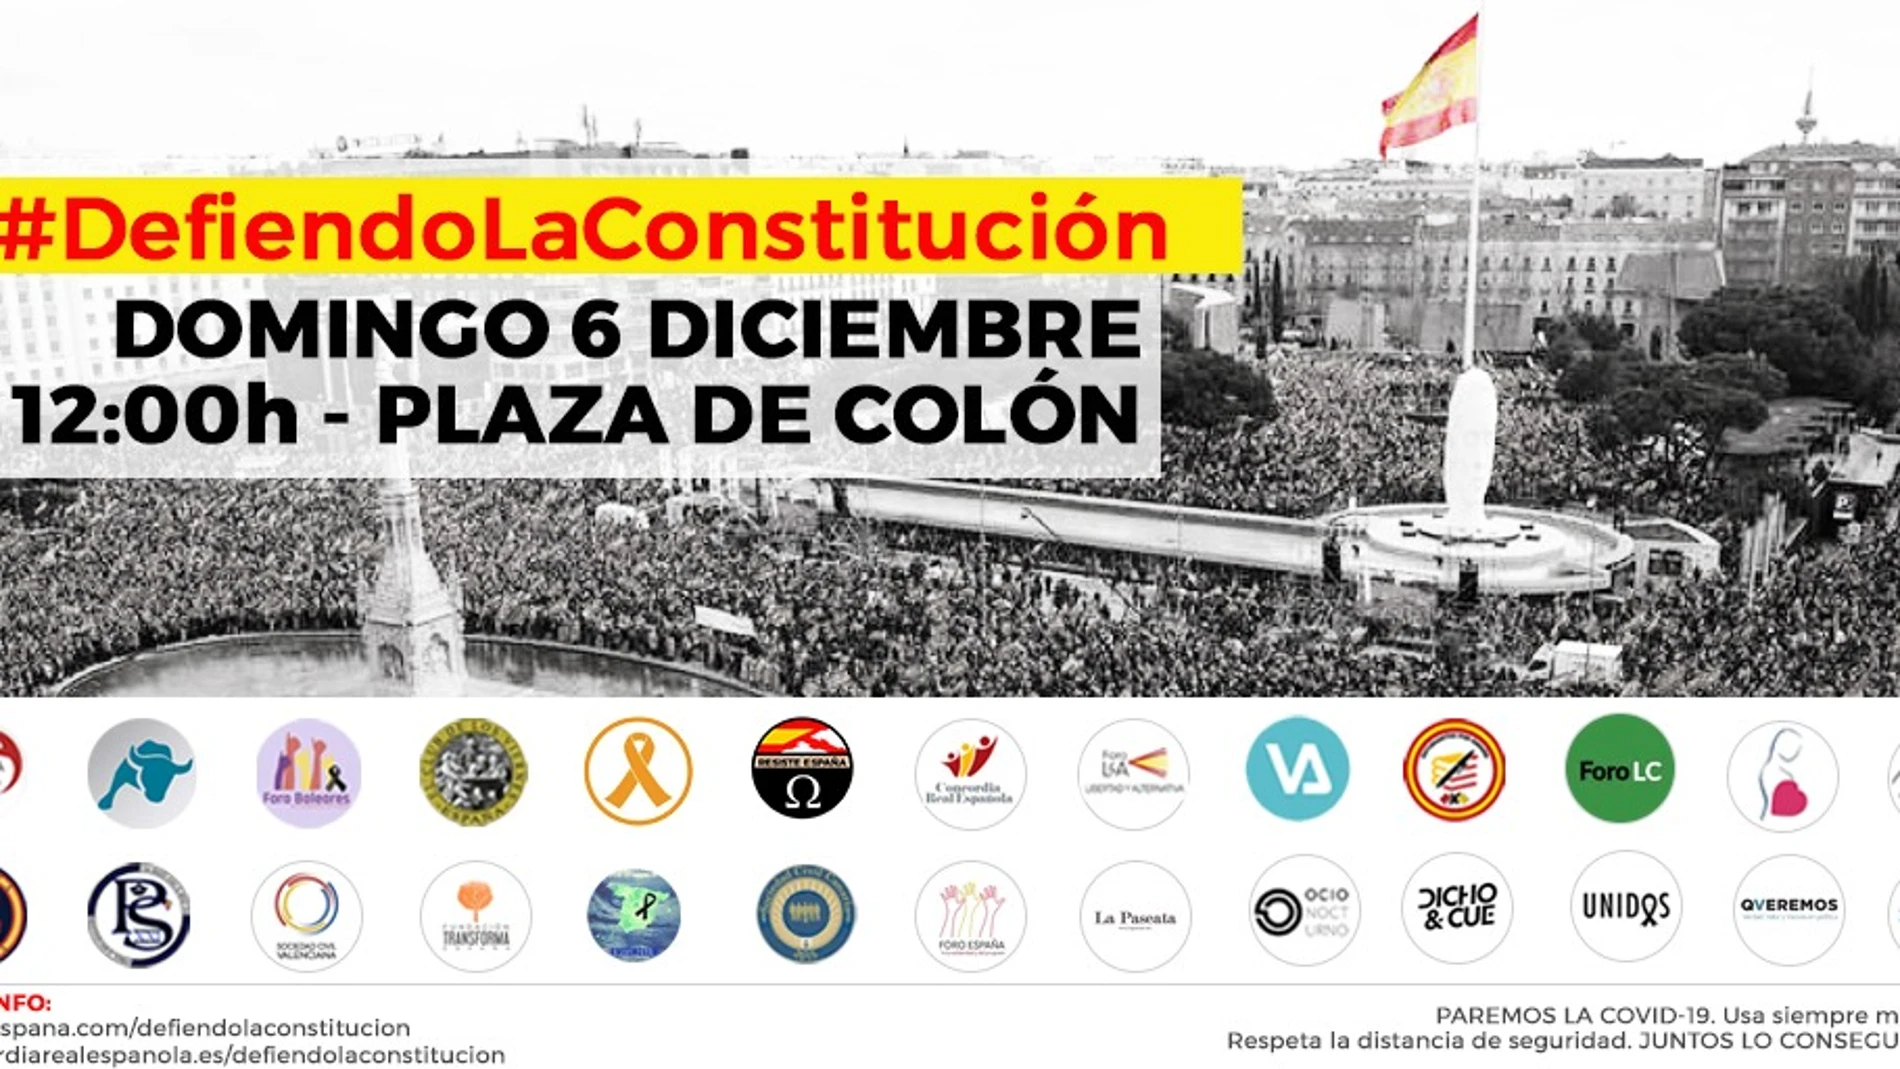 Cartel con la convocatoria del homenaje a la Constitución el domingo en Madrid